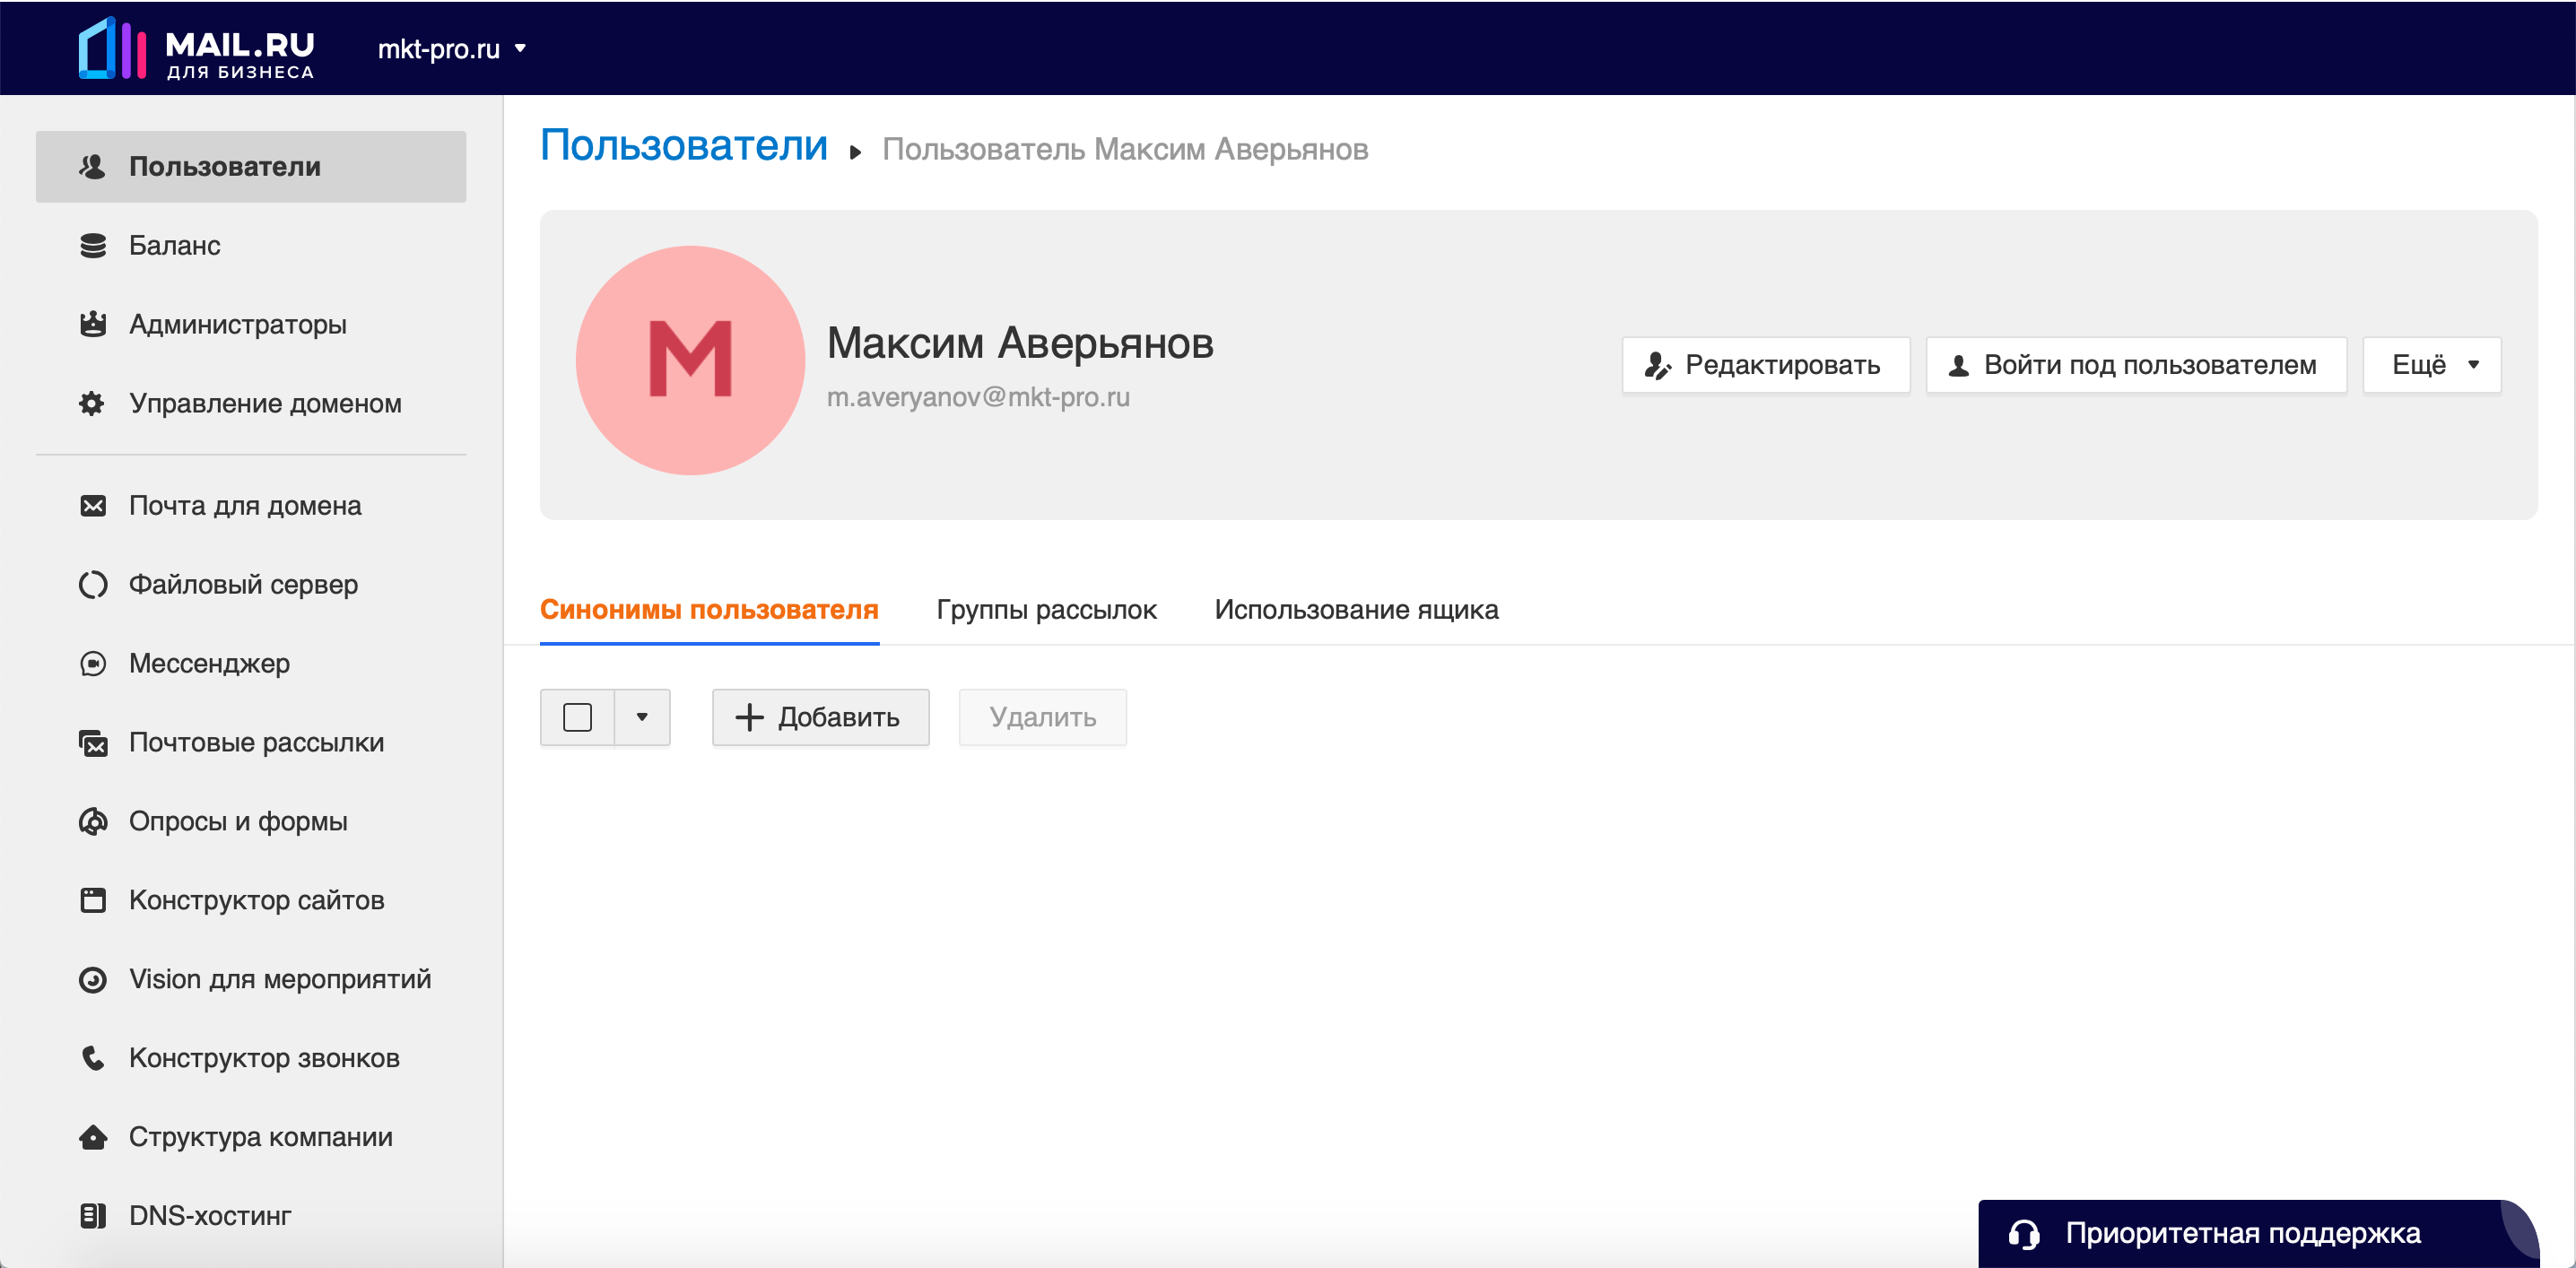 Biz mail login. Корпоративная почта. Корпоративная почта майл ру. Mail.ru доменная почта. Почтовые домены mail.ru.